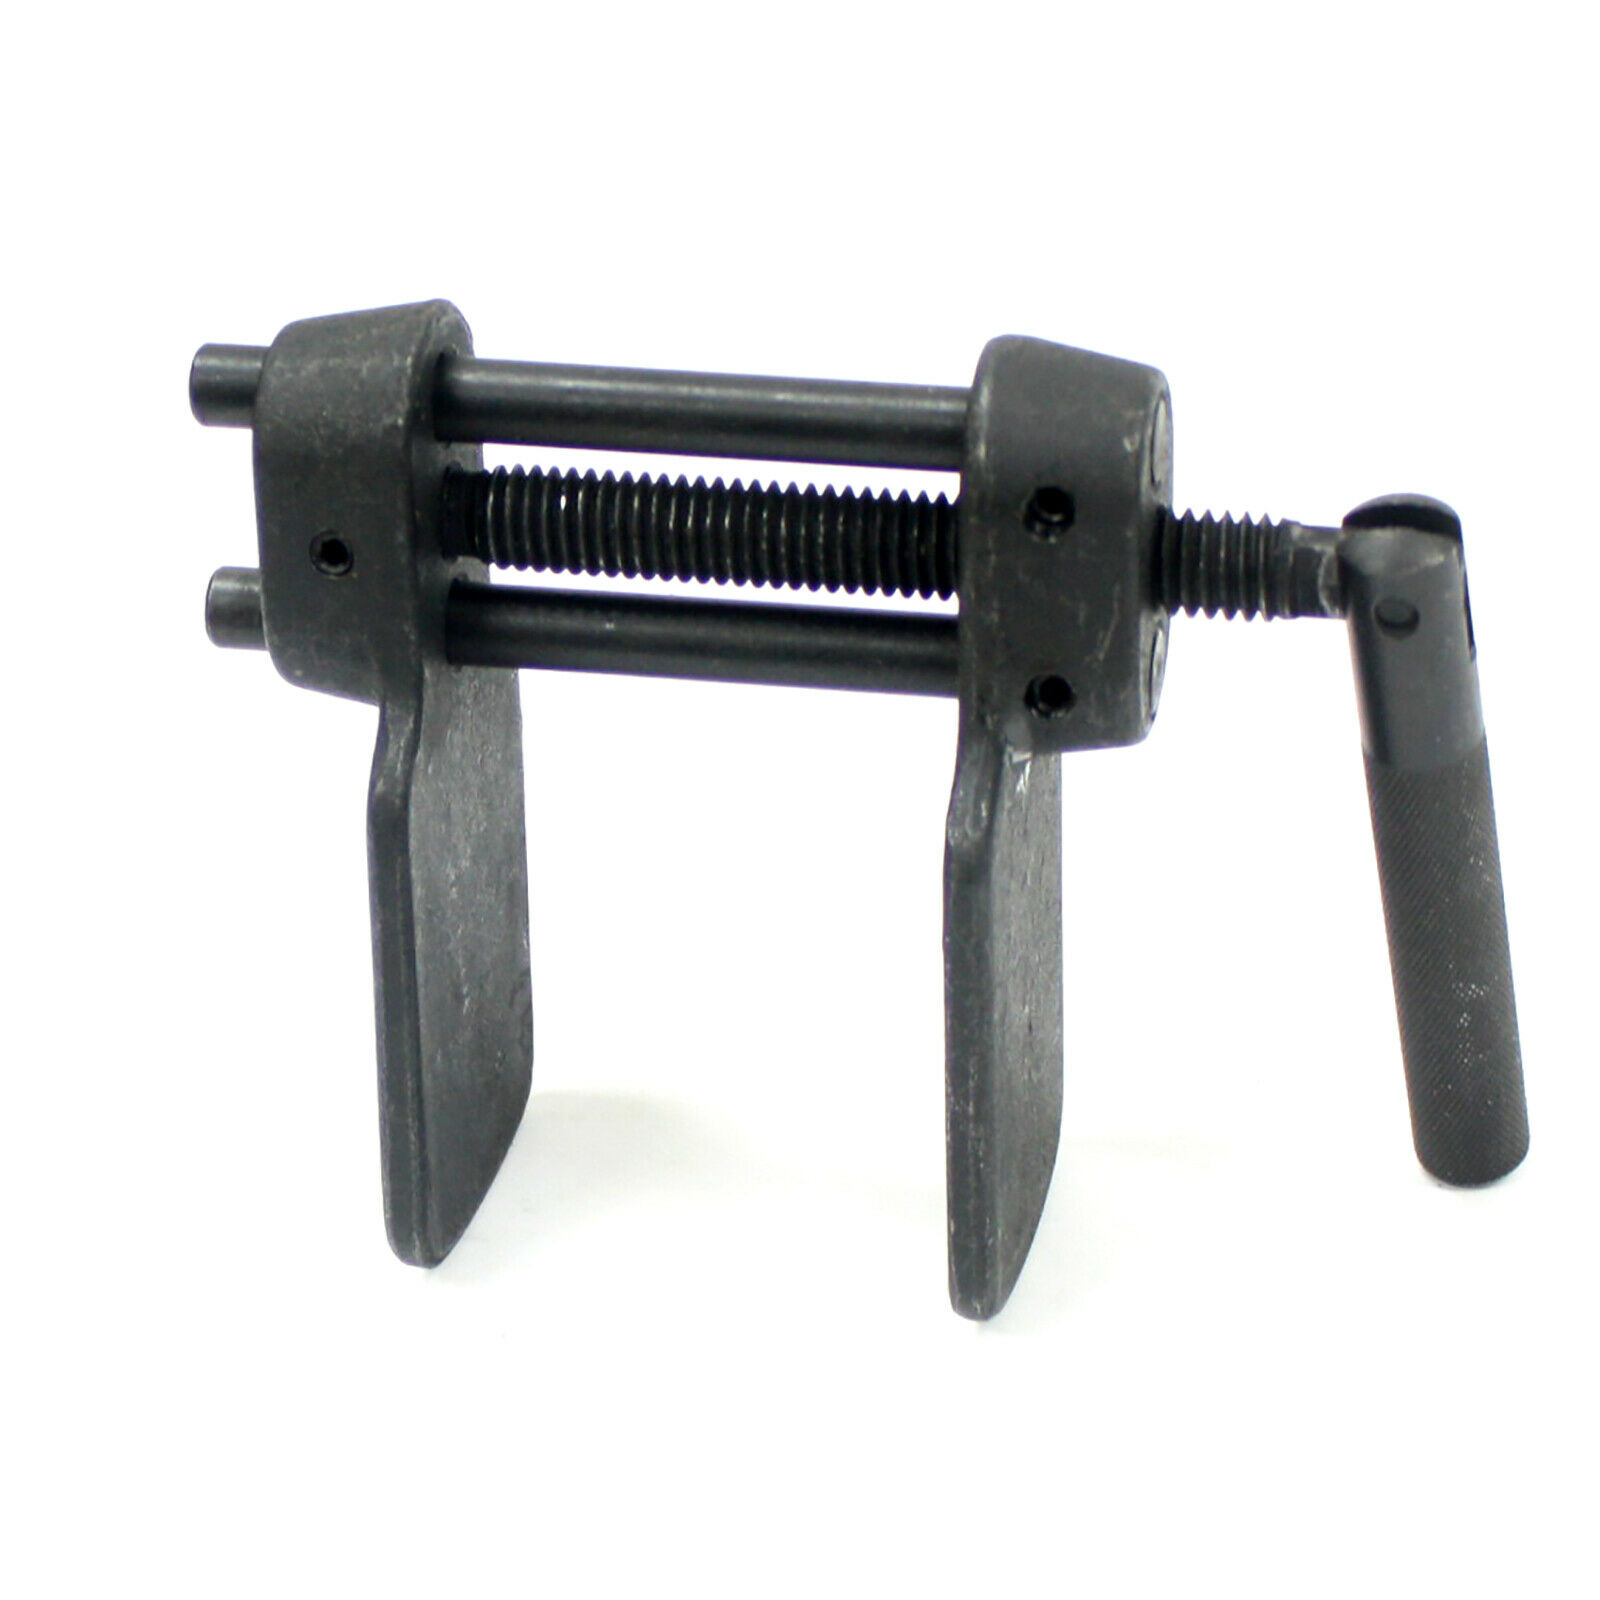 Piston Rewind Brake Pad Replacement Tool for Automotive Beduan Disc Brake Repair Spreader Caliper 